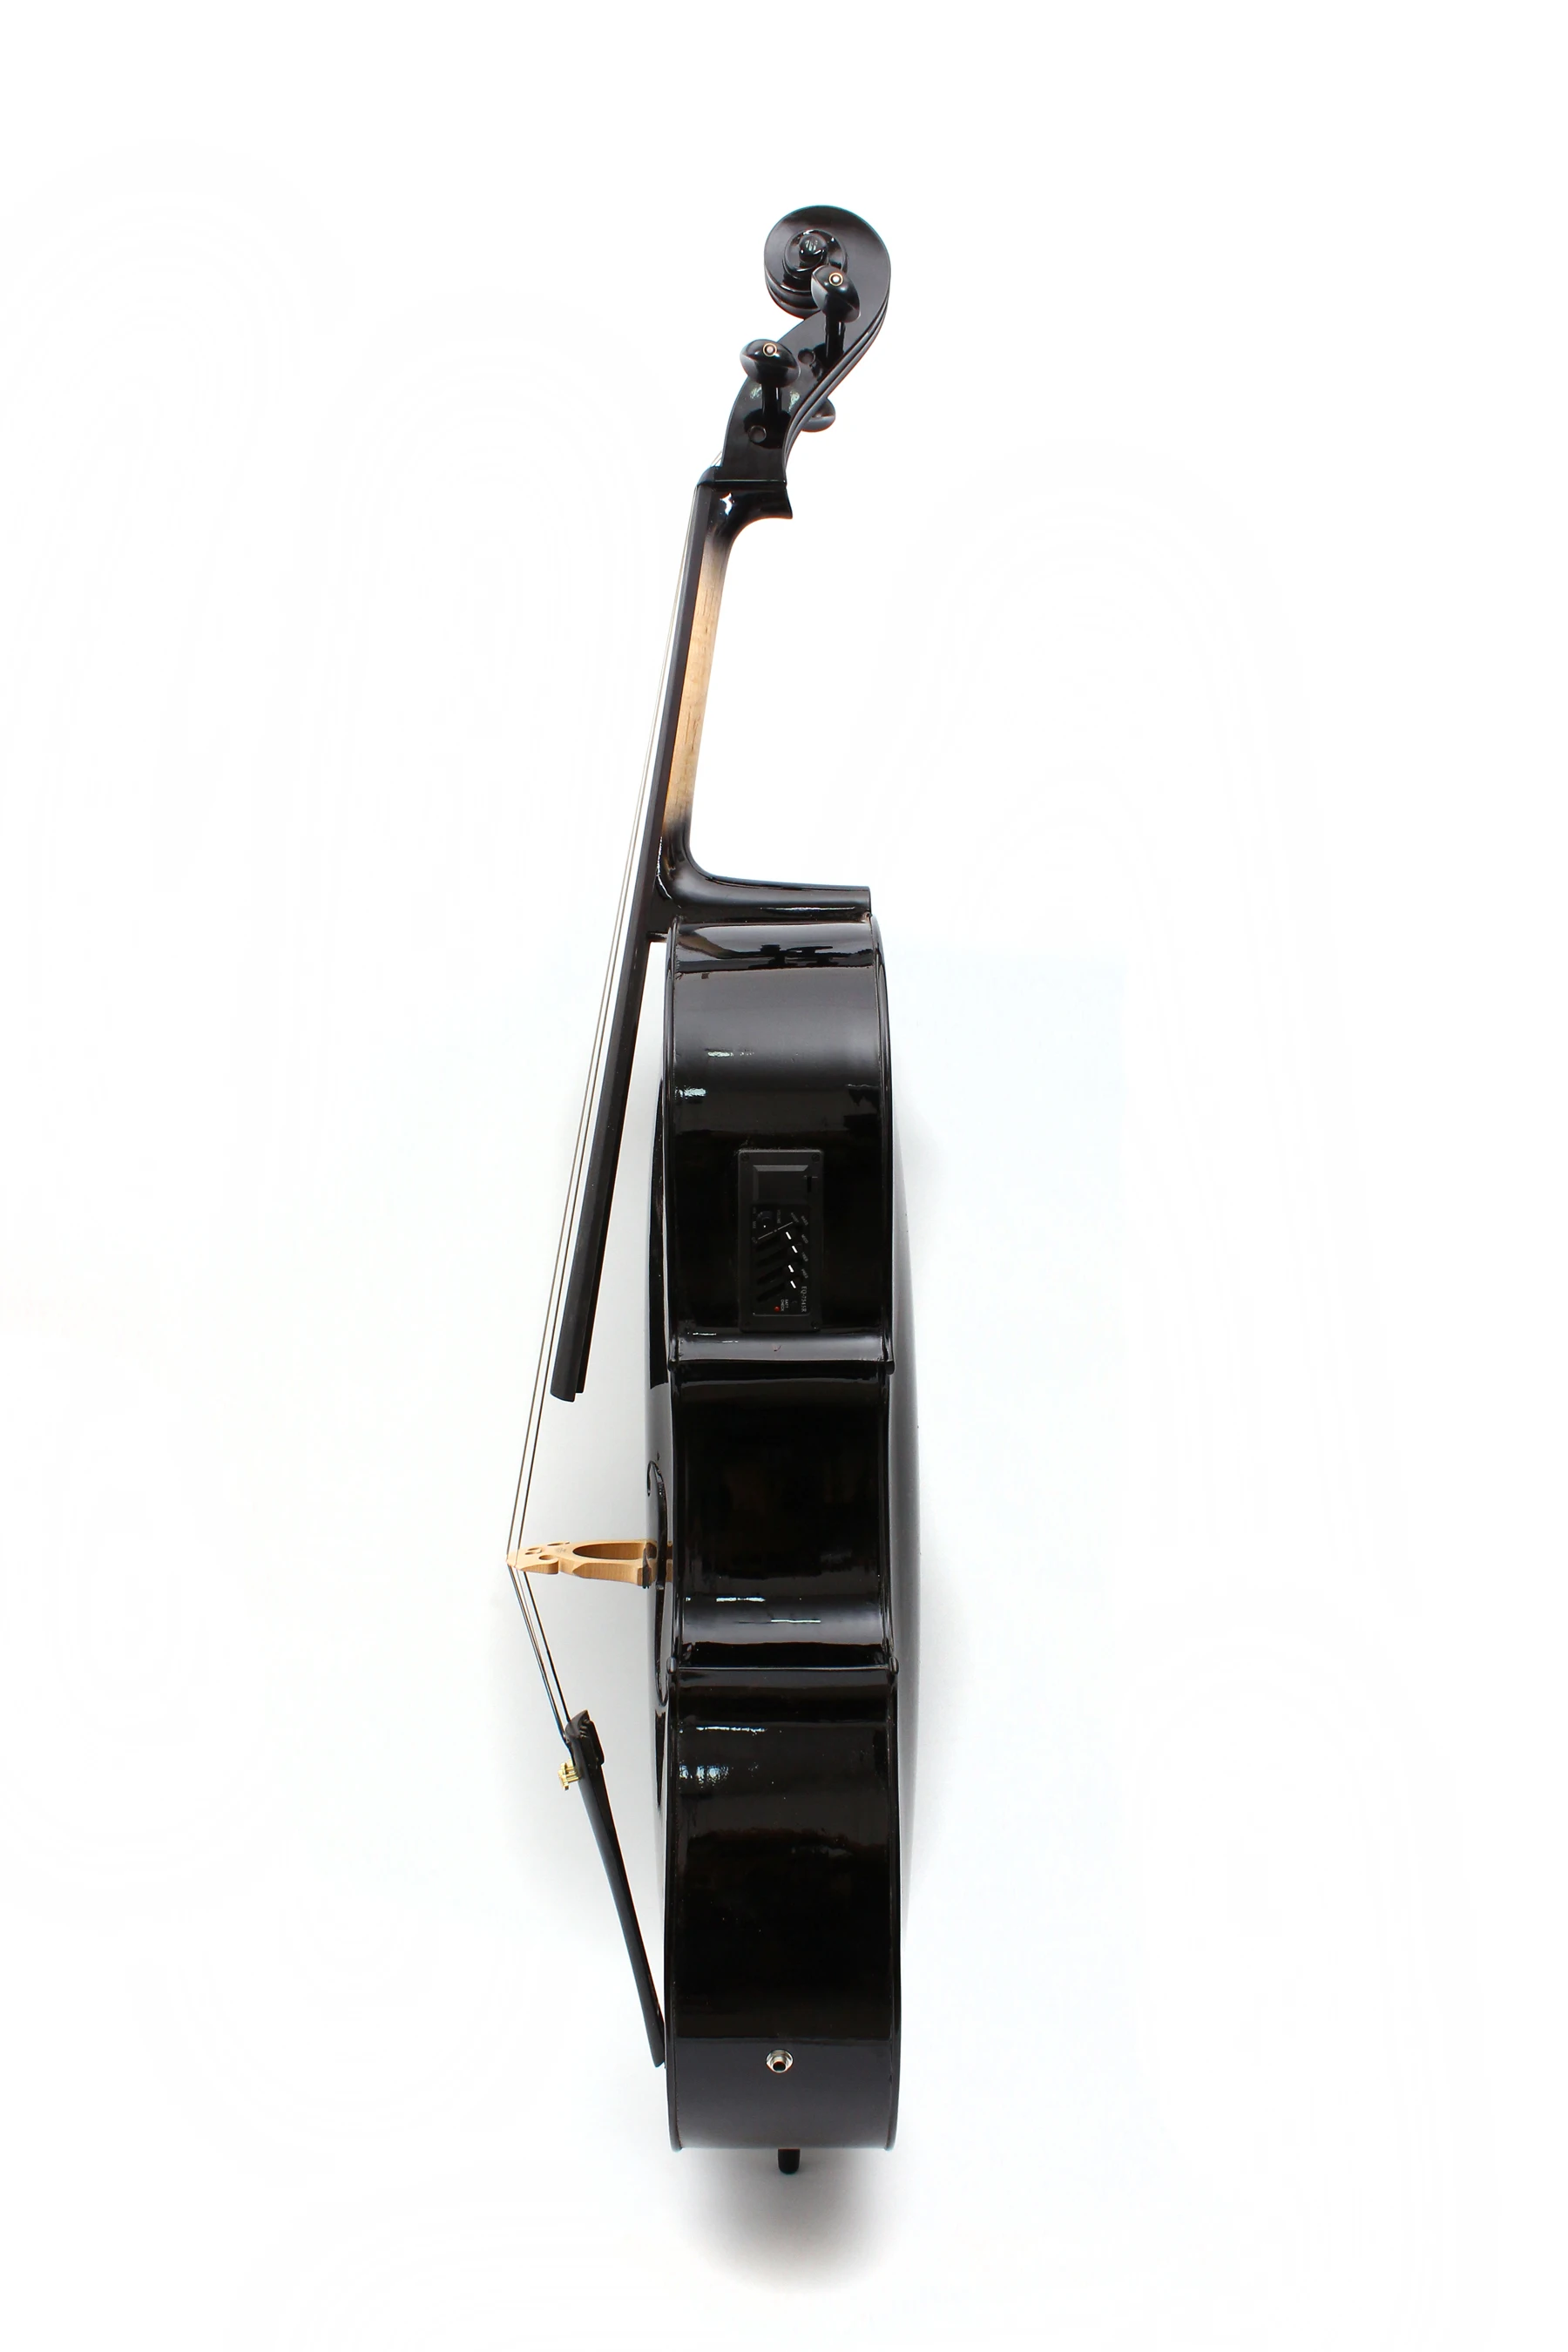 Черная электрическая акустическая виолончель Yinfente, 4/4 клен + ель, ручная работа, милый тон, Бесплатная Сумка + Бант # EC1